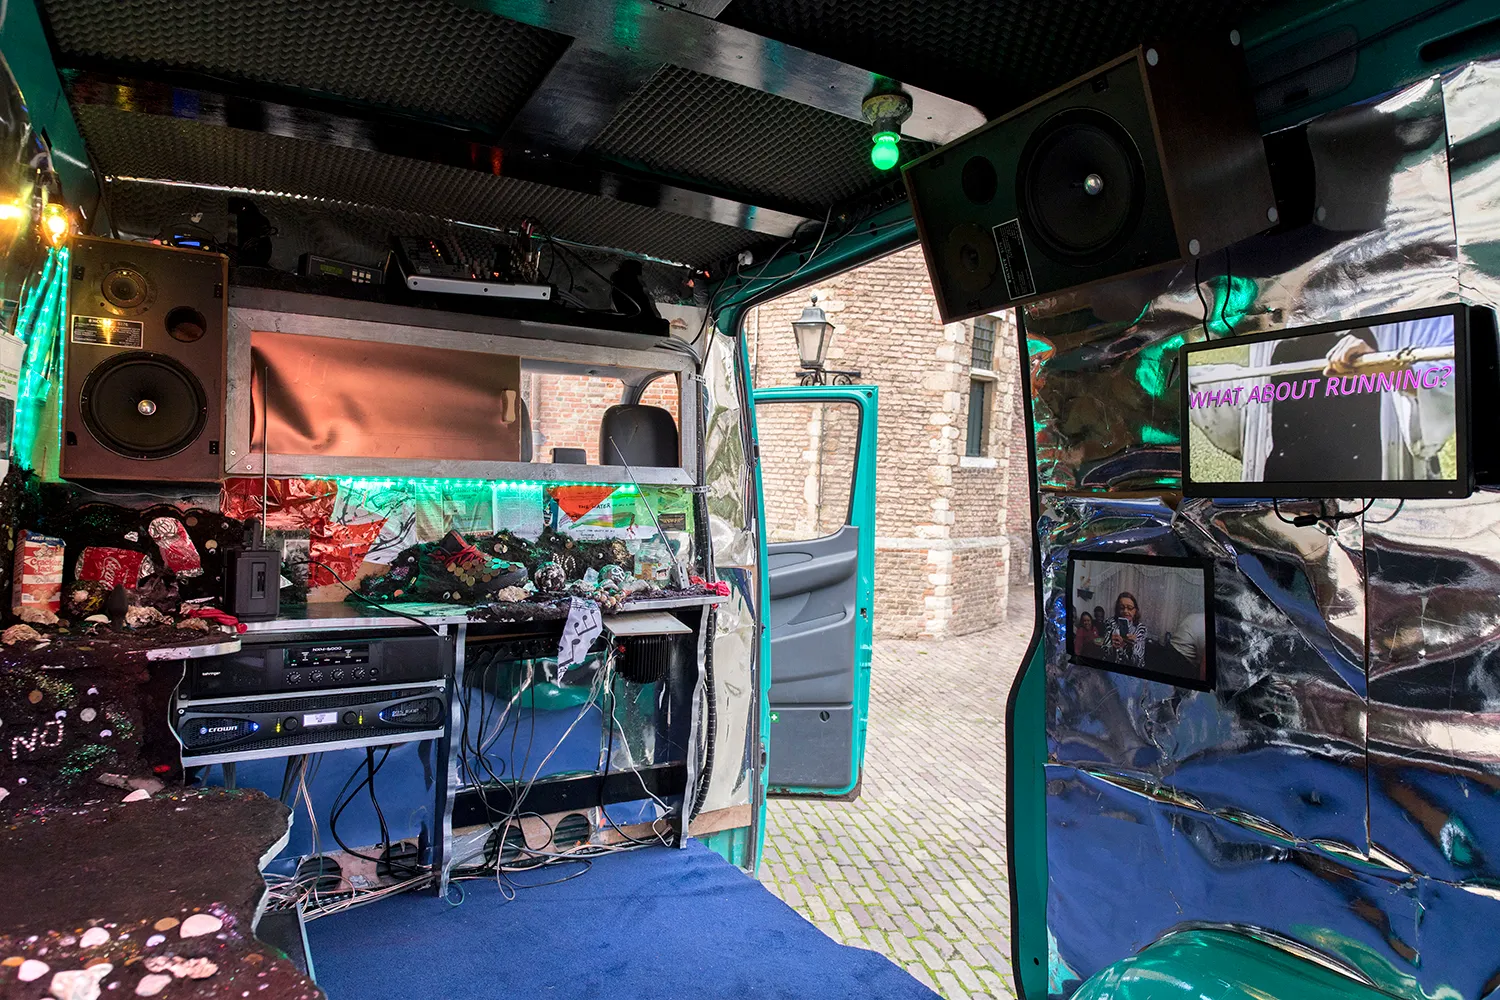 Interieur van het busje met o.a. schermen, luidsprekers, radio's en blauw tapijt